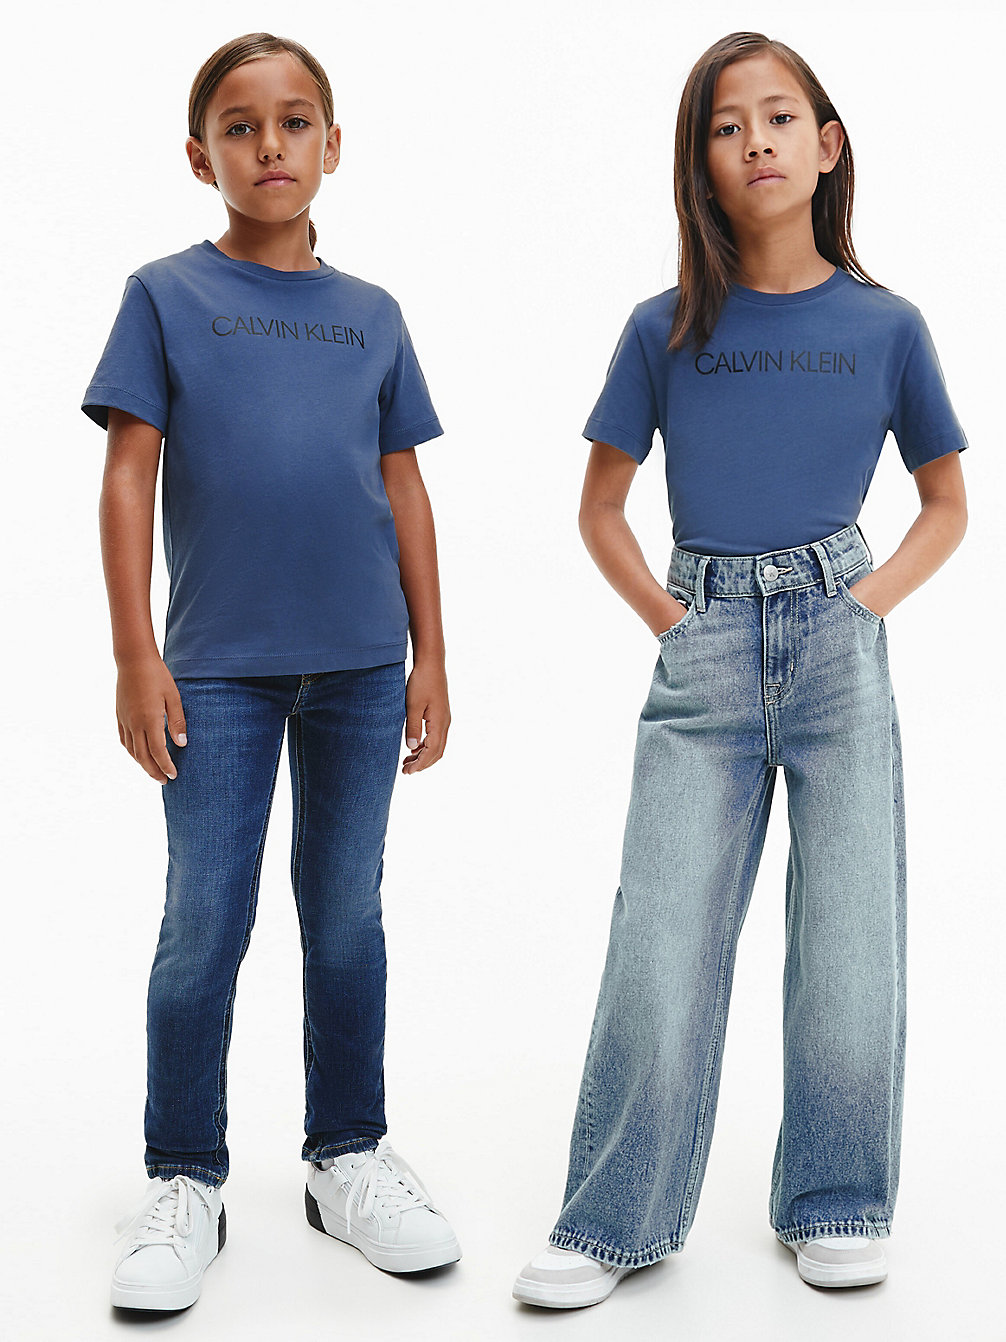 AEGEAN SEA Unisex Logo-T-Shirt Aus Bio-Baumwolle undefined kids unisex Calvin Klein